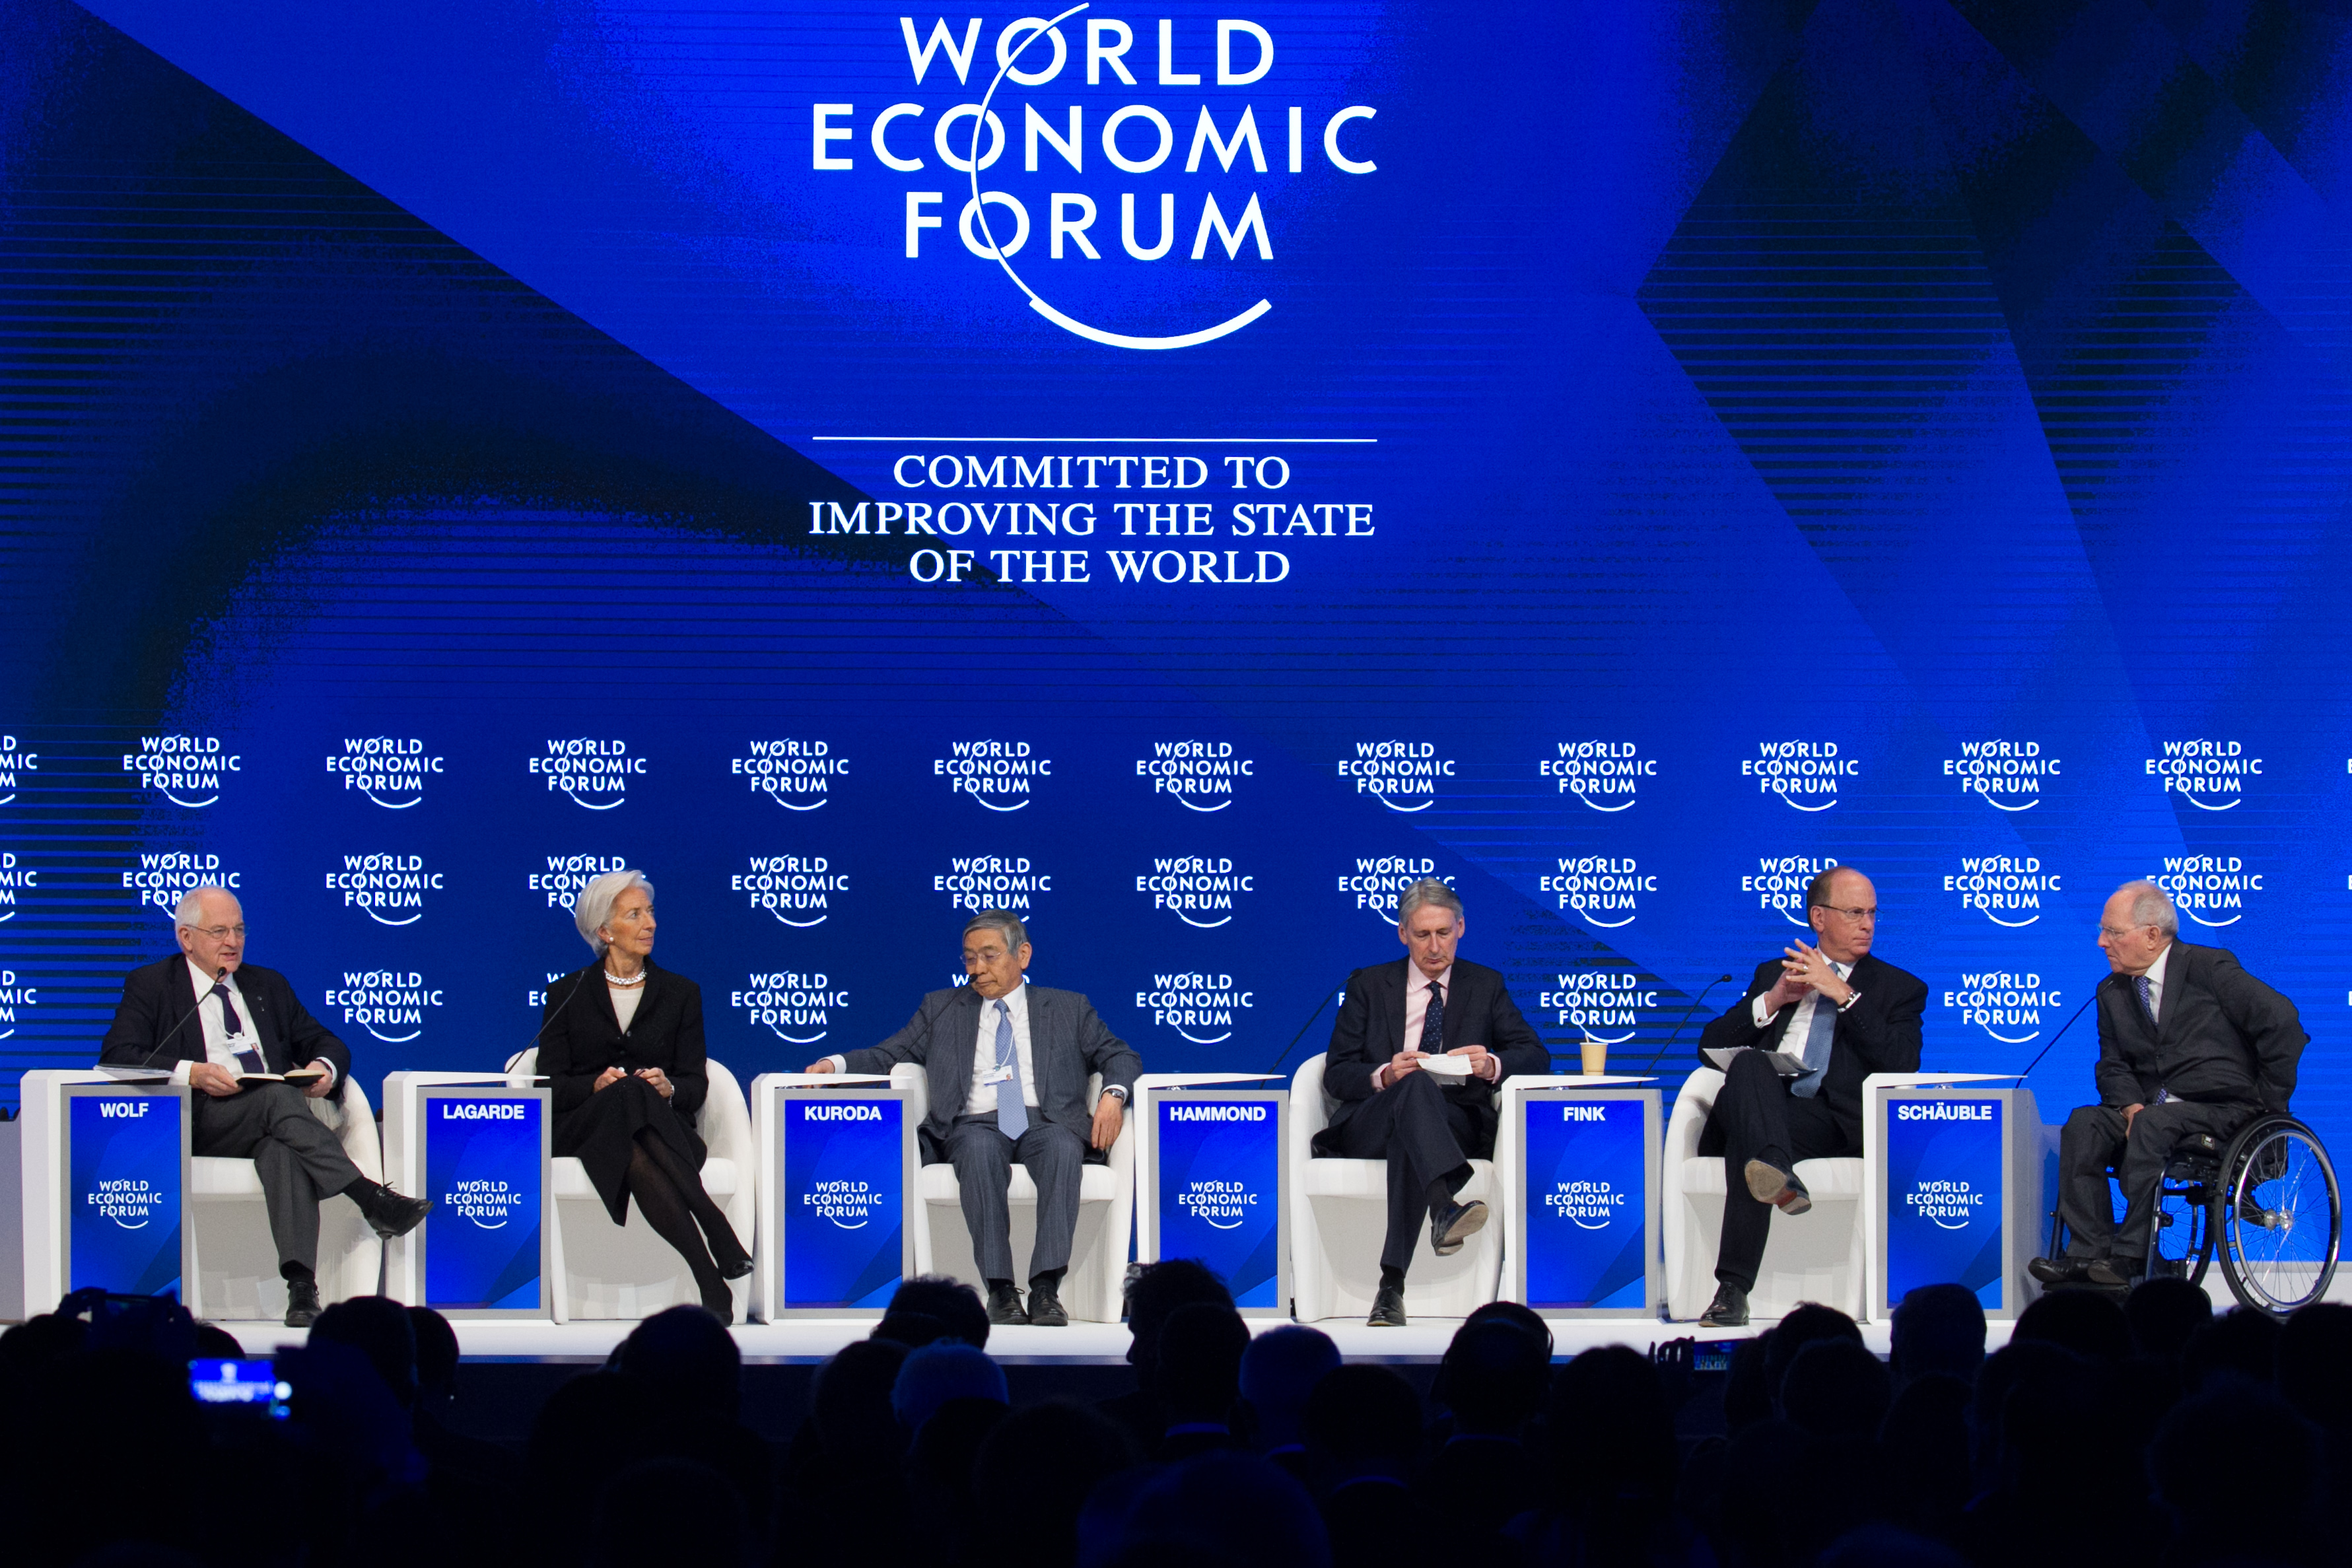 Davos economic forum